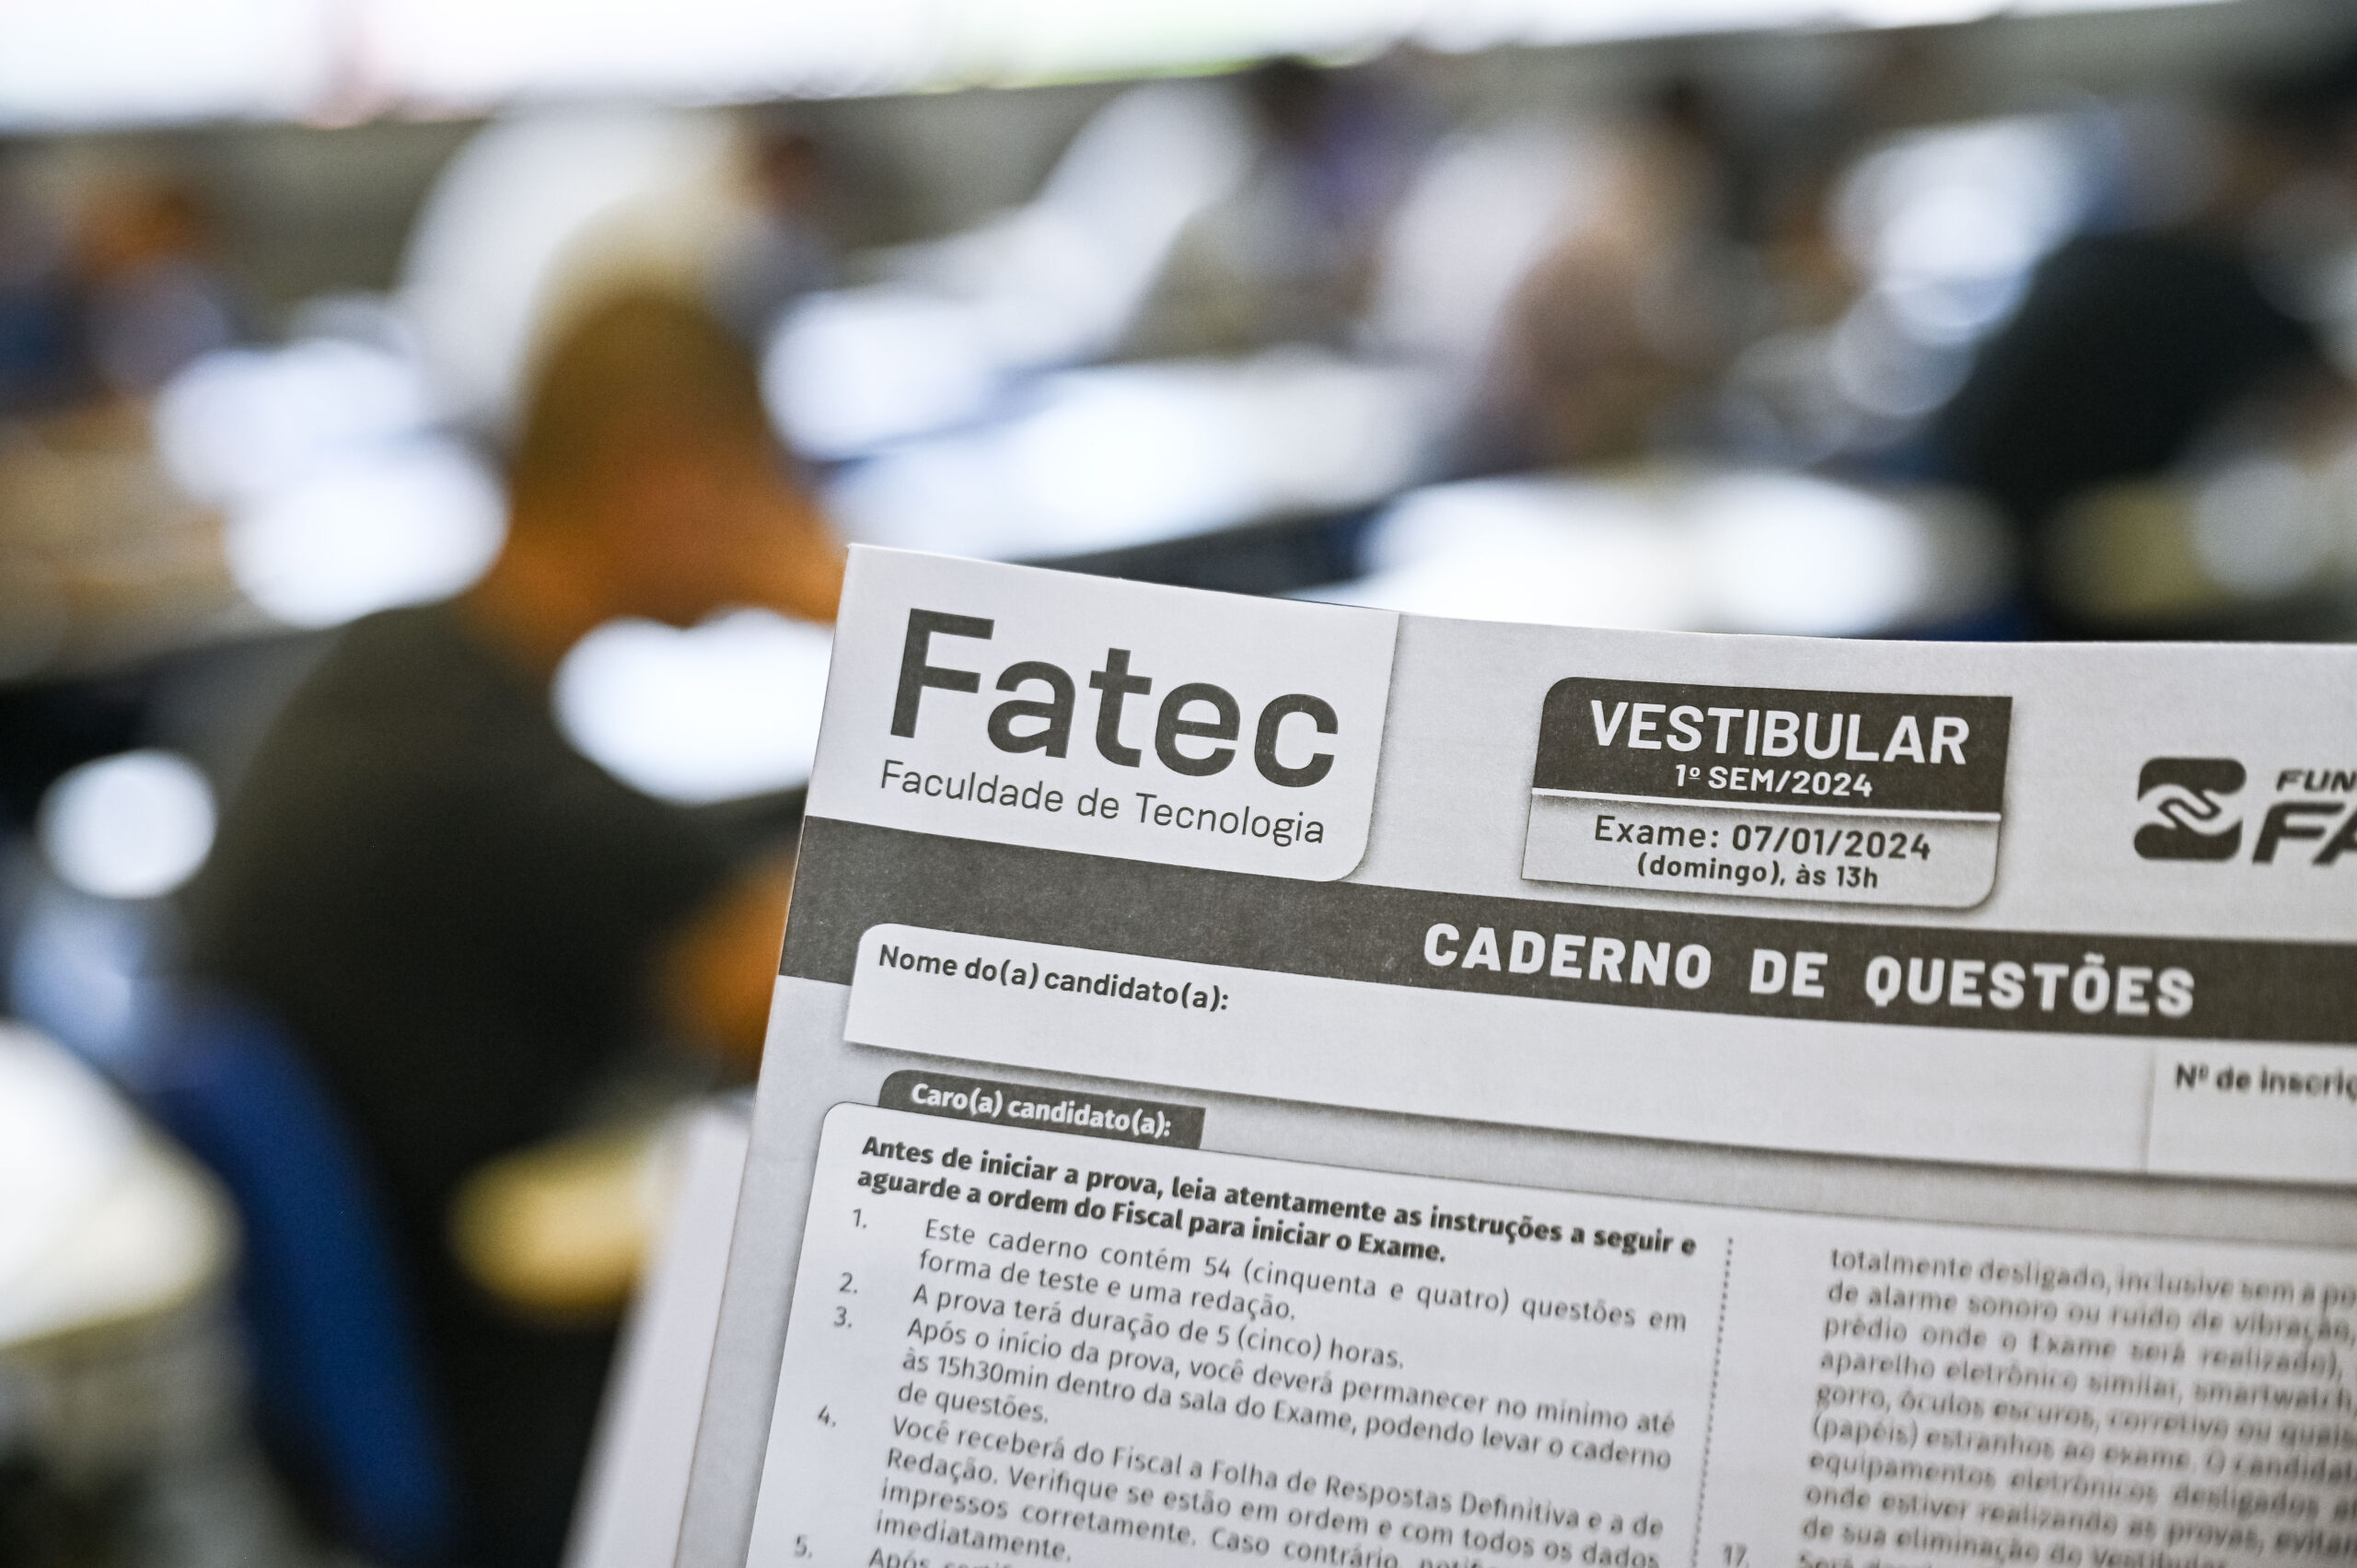 Documentos solicitados pelas Fatecs devem ser anexados, via upload, nos formatos PDF, JPEG ou PNG | Foto: Roberto Sungi